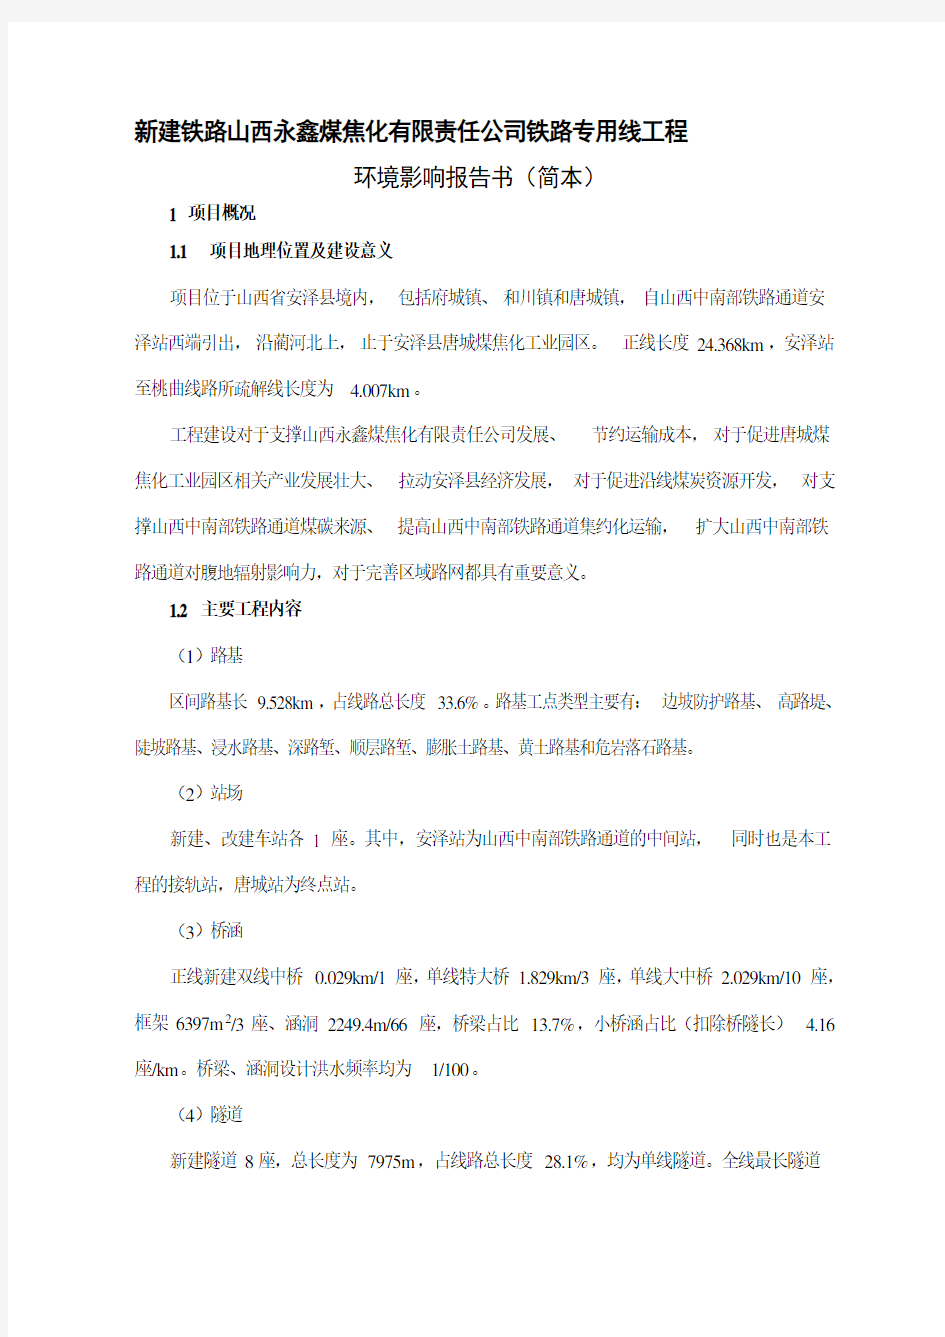 新建铁路山西永鑫煤焦化有限责任公司铁路专用线工程环境影响评价报告